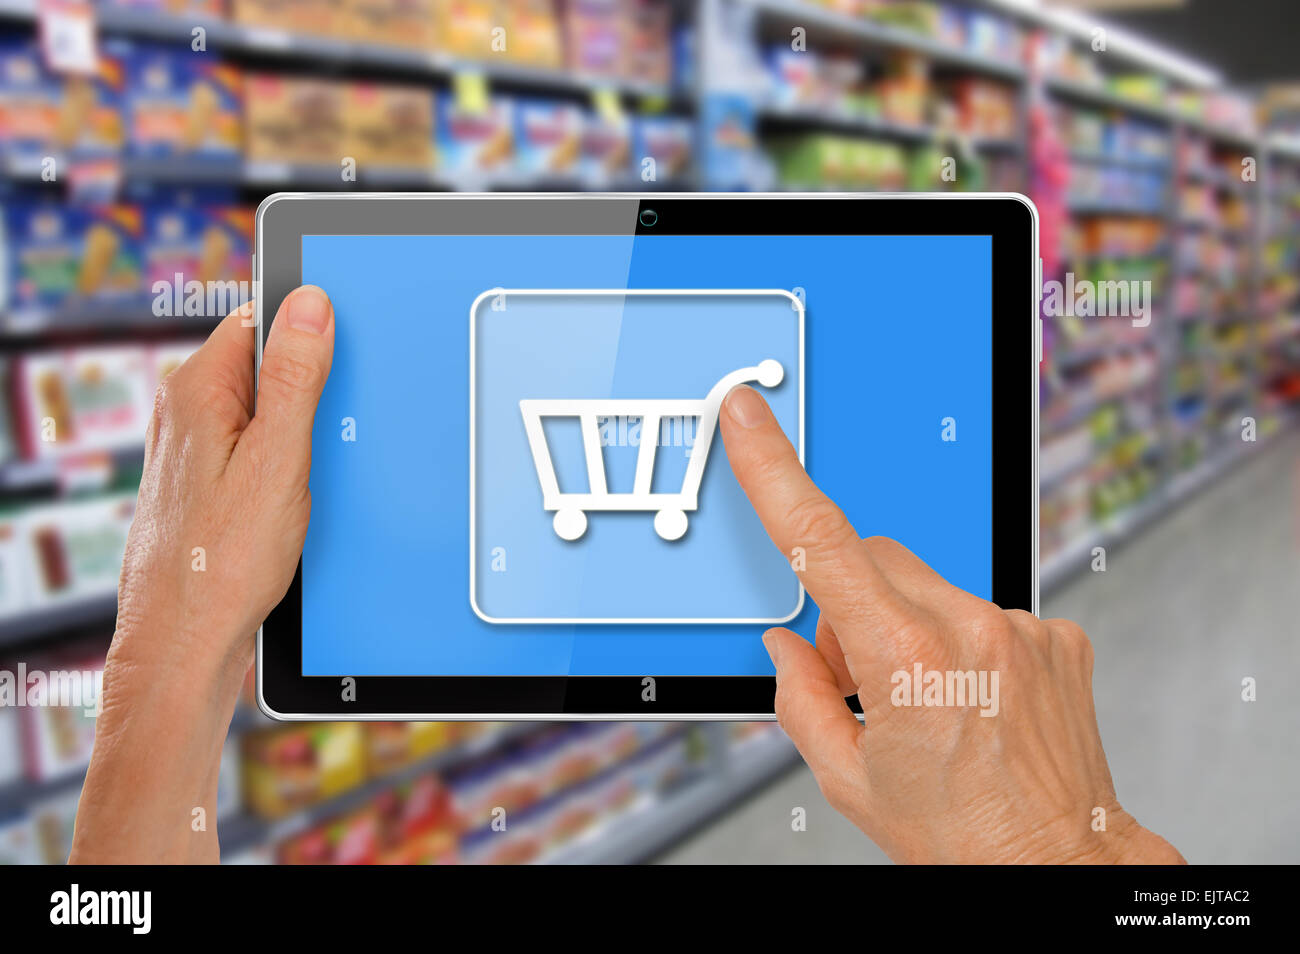 Supermarché en ligne Shopping mains avec tablette de l'ordinateur en touchant l'icône Panier en face de supermarché épicerie Banque D'Images